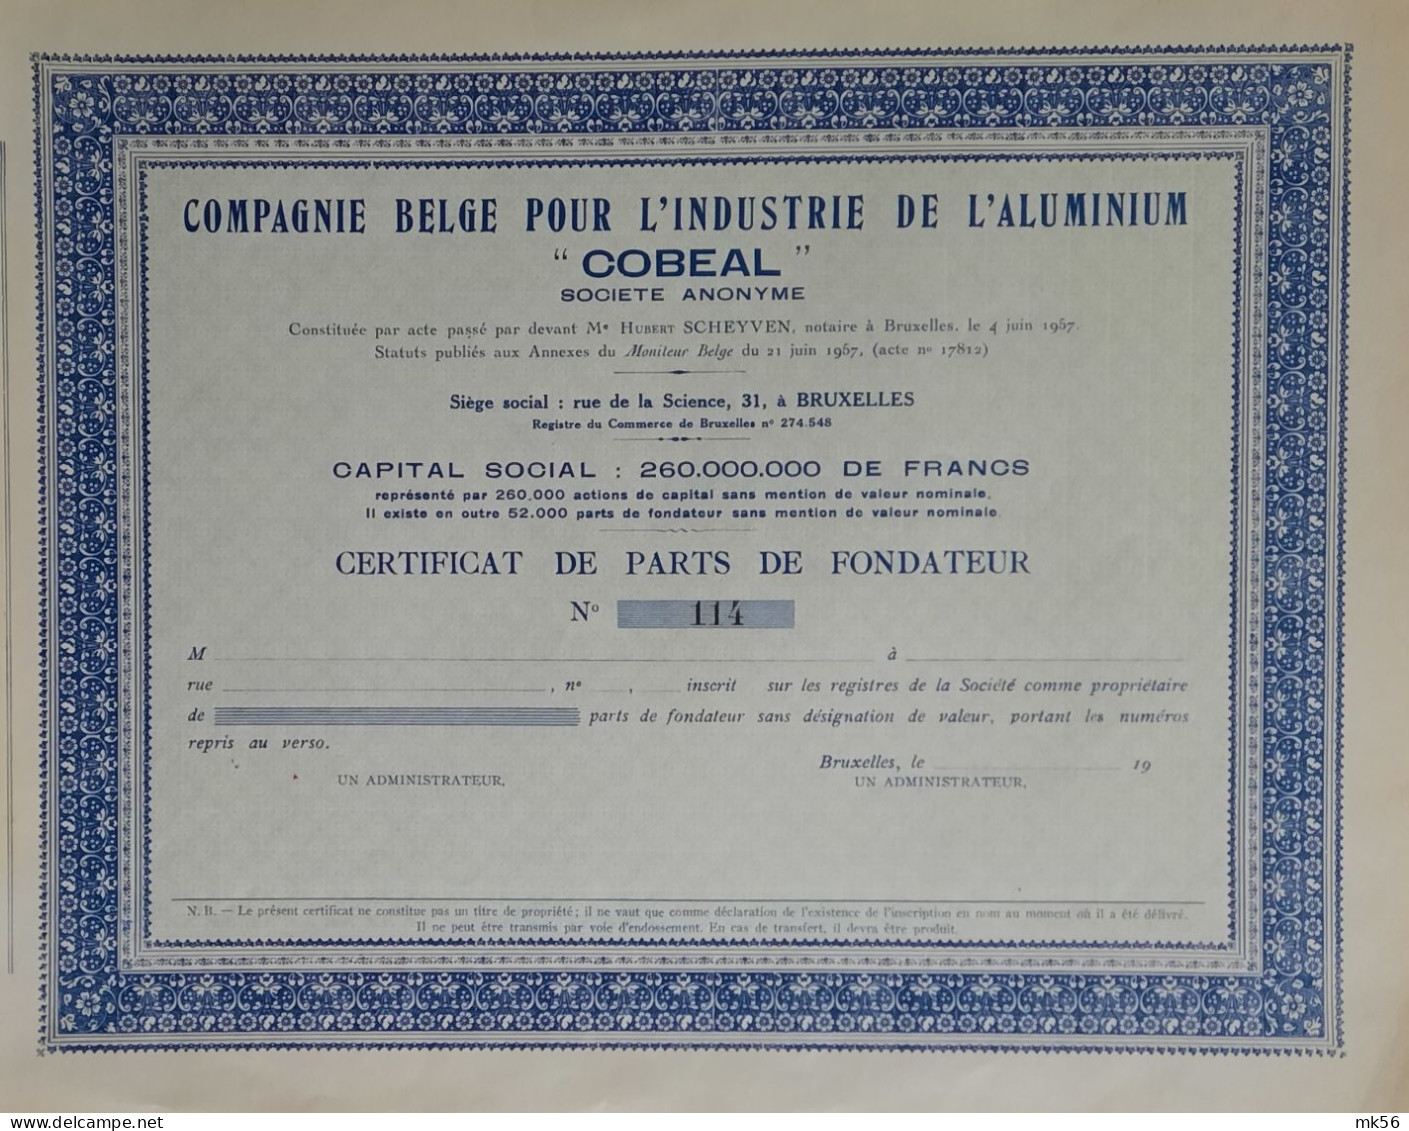 Compagnie Belge Pour L'Industrie De L'aluminium 'Cobeal' - Bruxelles - Certificat De Parts De Fondateur - Non émis -1957 - Industry